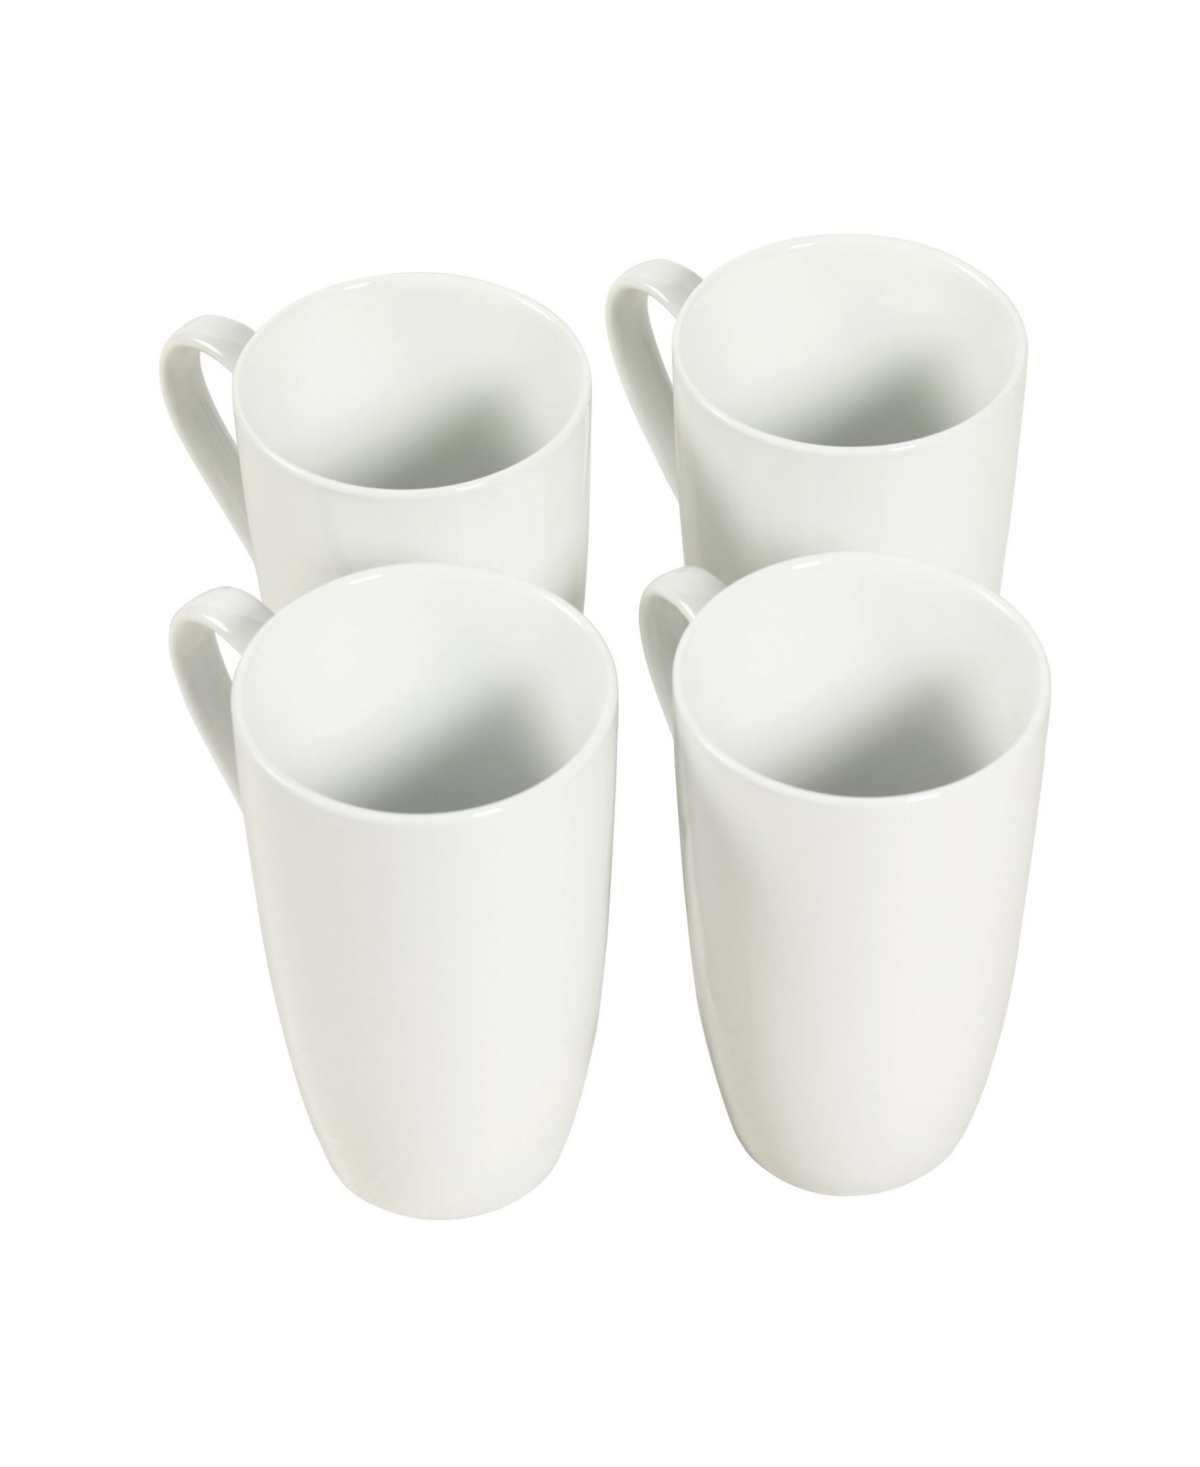 Denmark Latte Mugs, Set of 4 - White